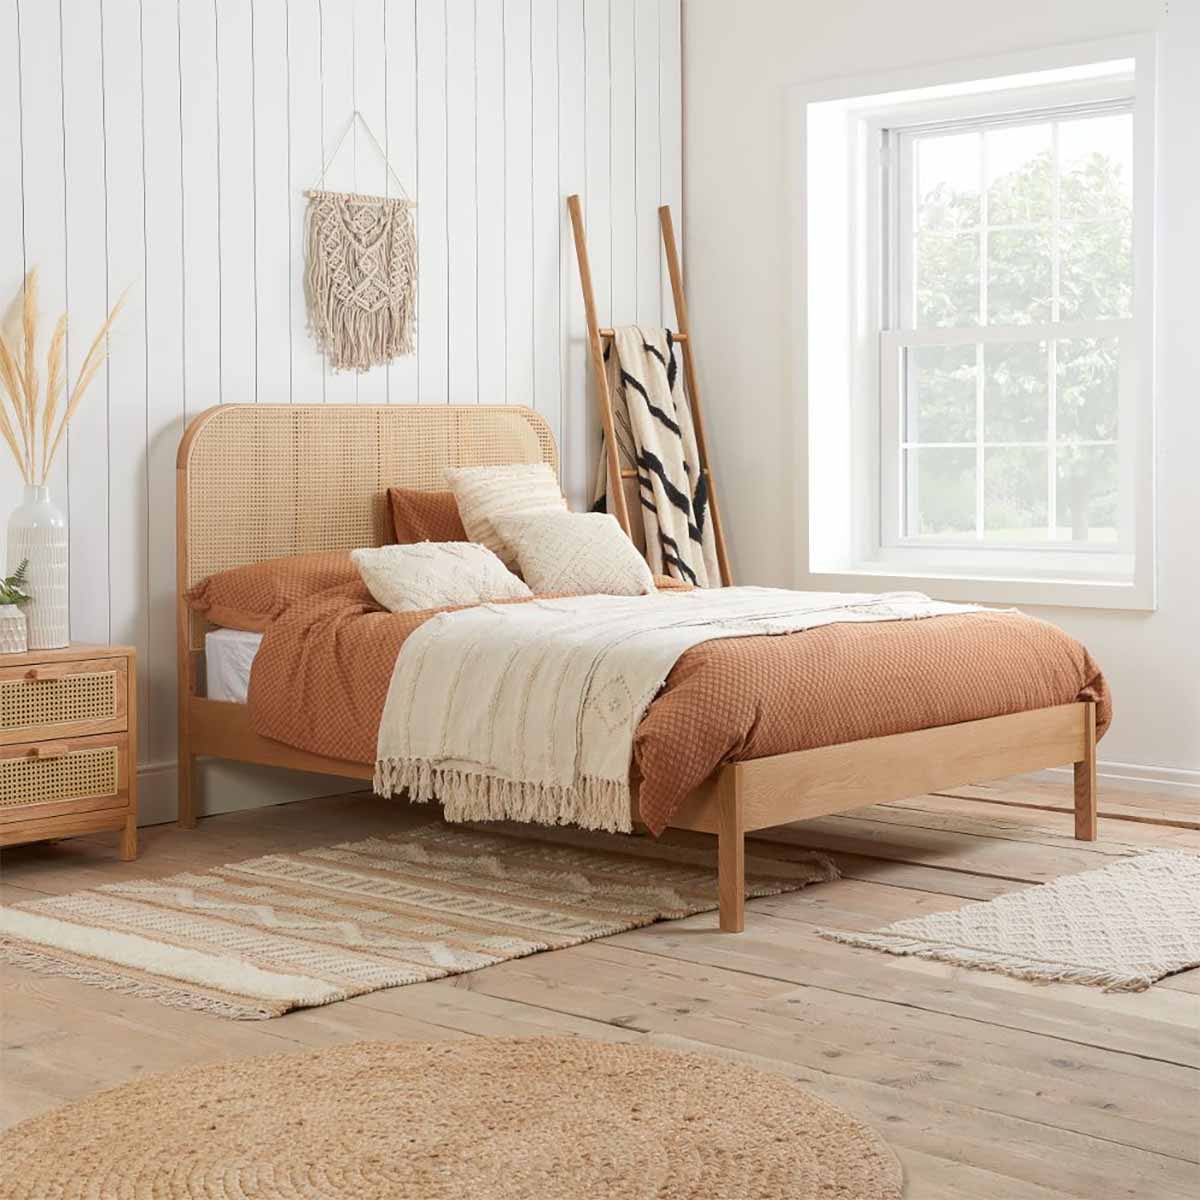 تخت خواب چوبی حصیری رنگ روشن با پایه های بلند